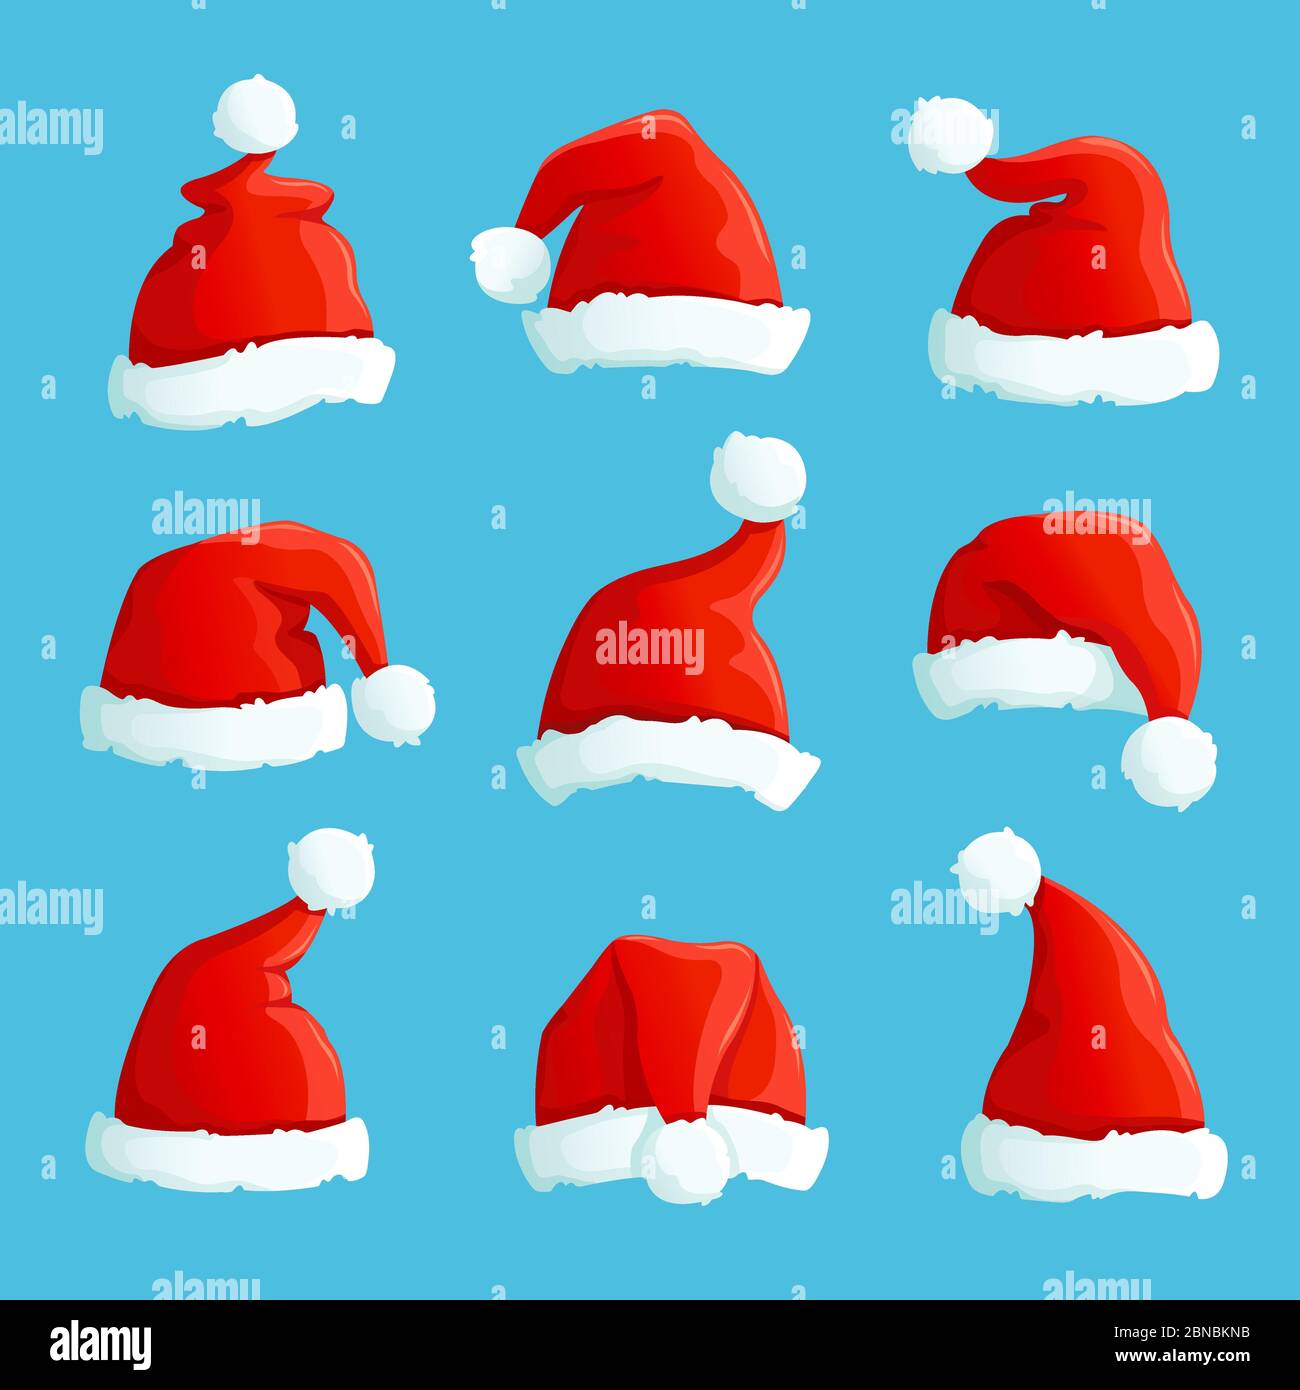 Weihnachtsmützen. Cartoon weihnachten Kostüm Mützen mit Fell. weihnachtsmann  Hut Vektor-Set. Illustration von Mütze santa claus, Kostüm Weihnachten  Stock-Vektorgrafik - Alamy